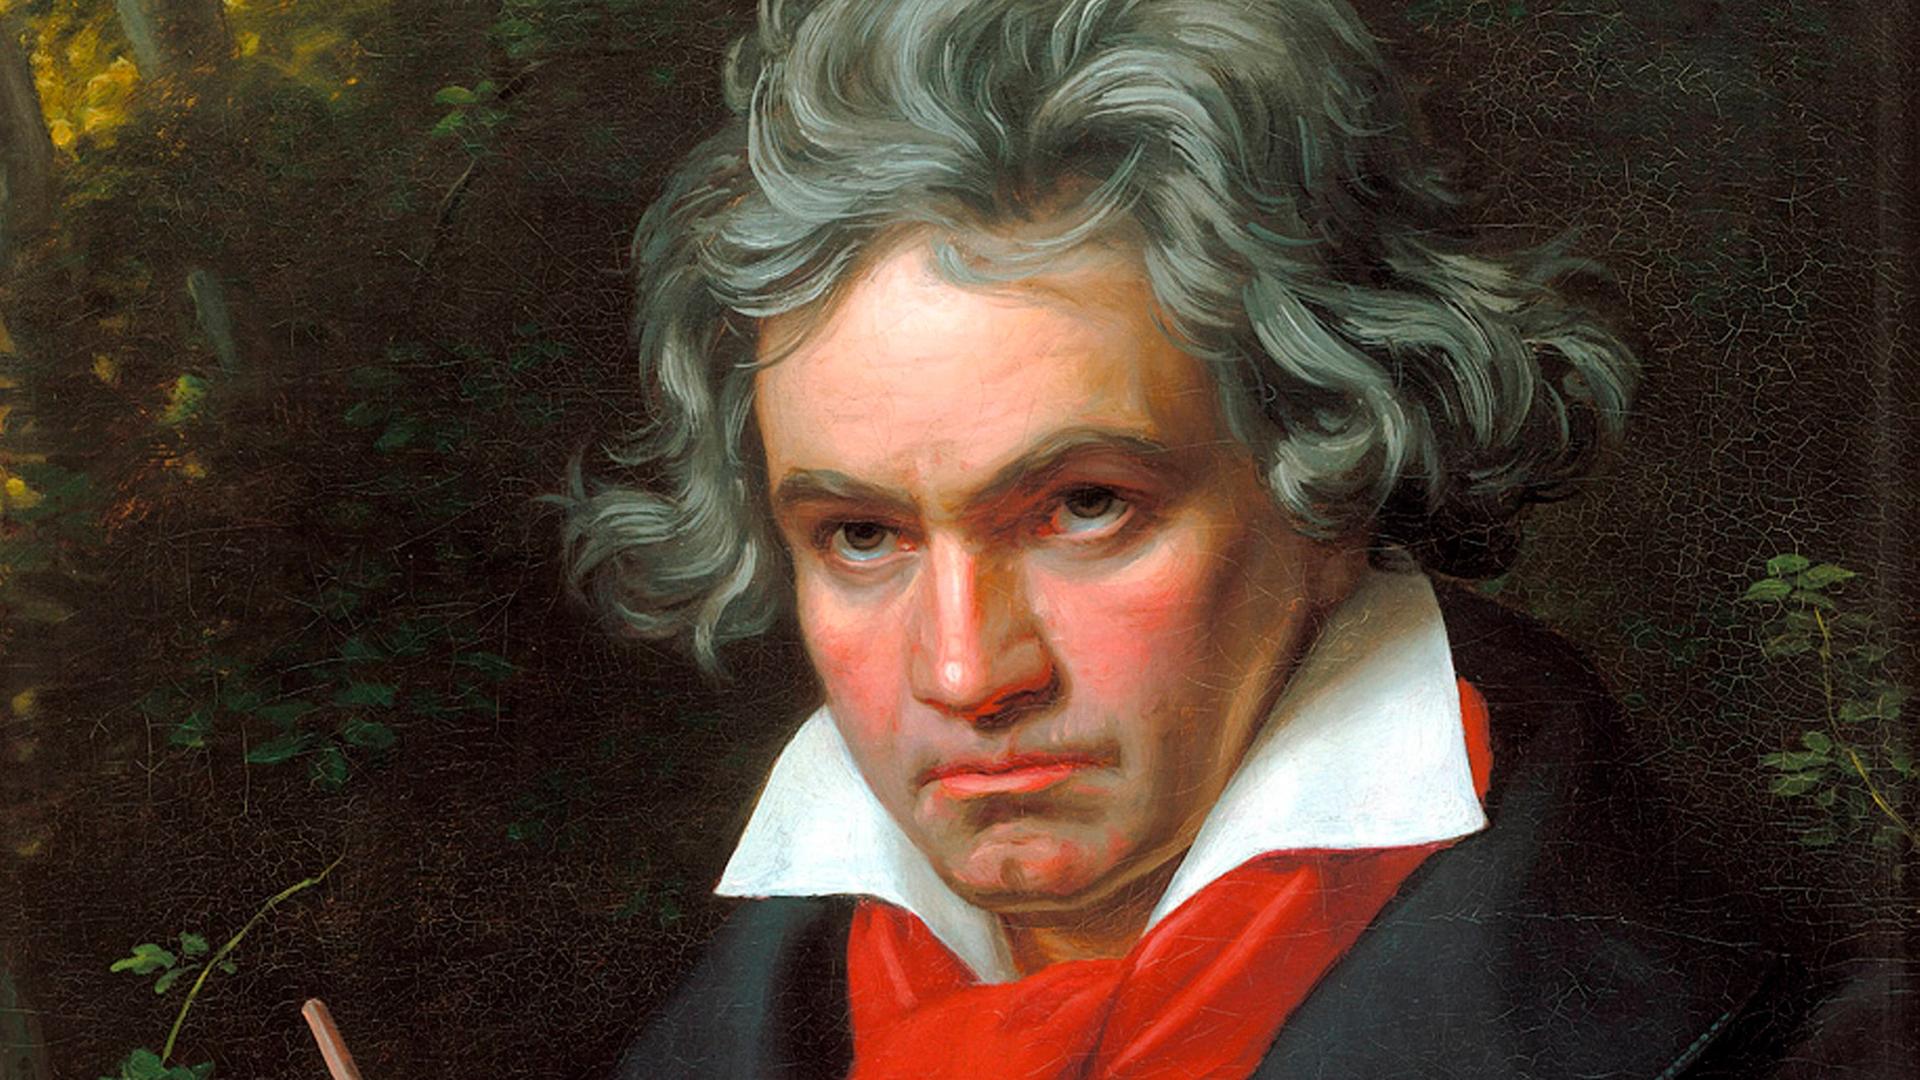 Gemaltes Porträt von Ludwig van Beethoven beim Komponieren. Der Komponist schaut grimmig, sein Haar liegt wild, er trägt einen leuchtend roten Schal.